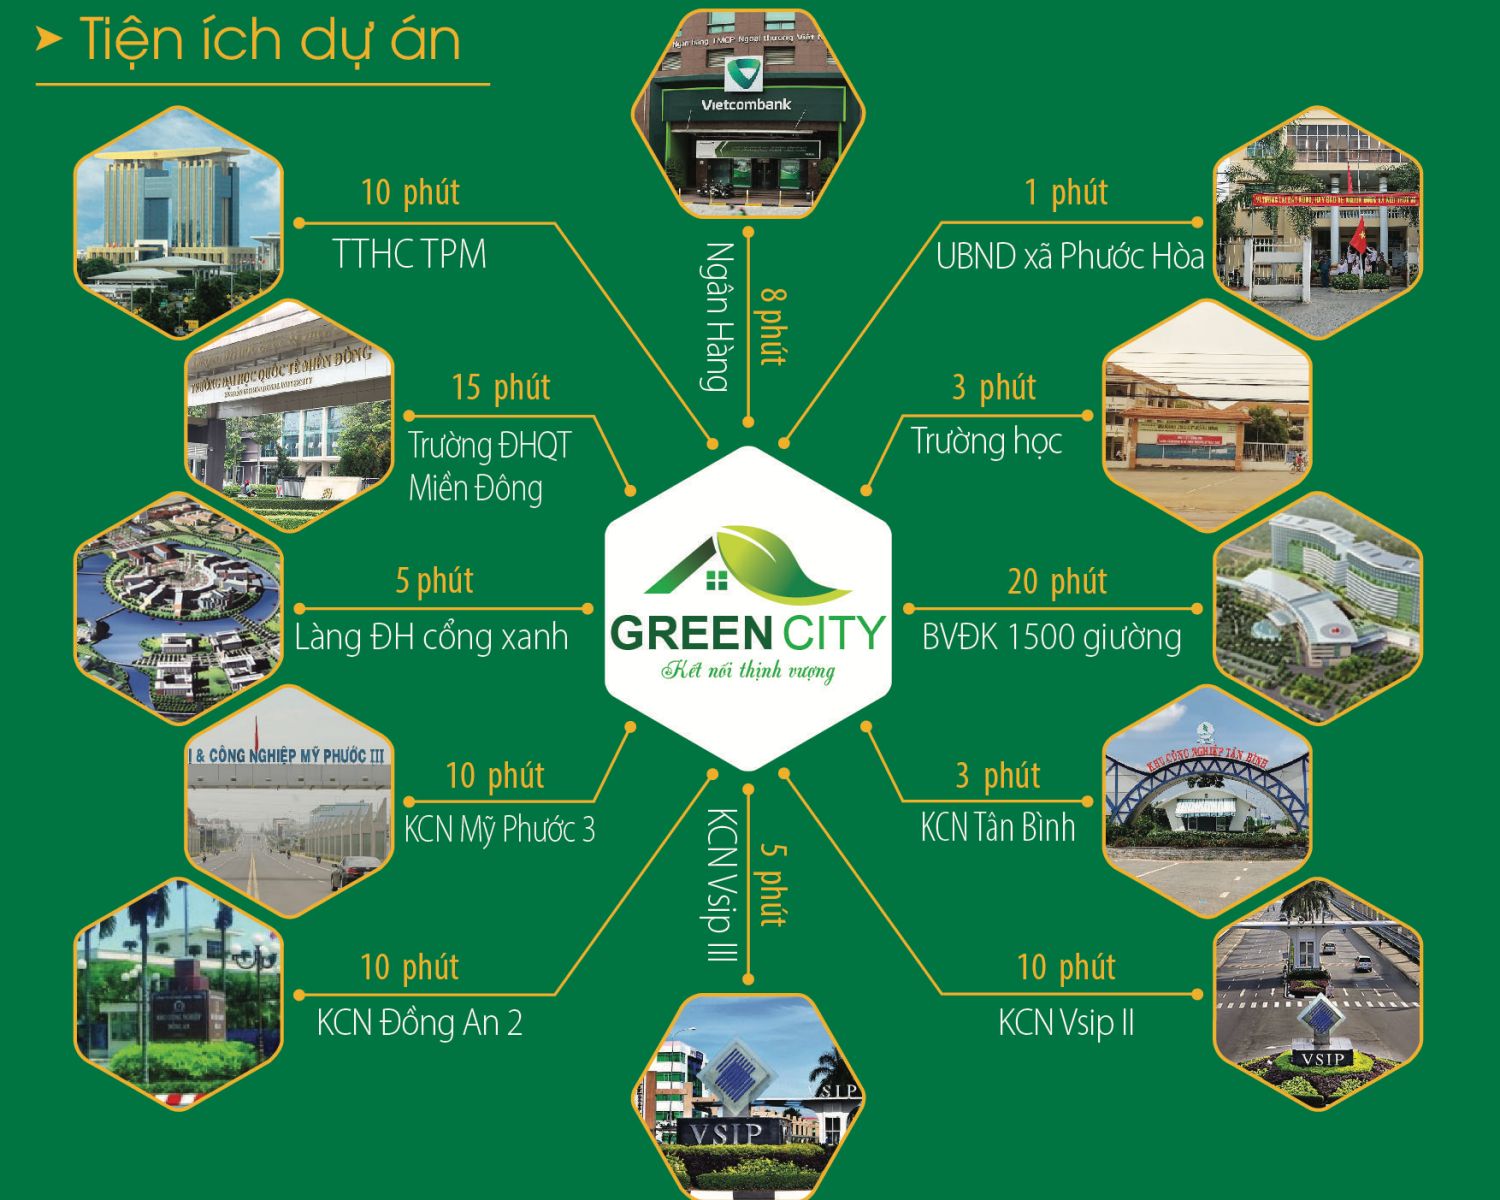 Tiện tích dự án Green City Phú Giáo